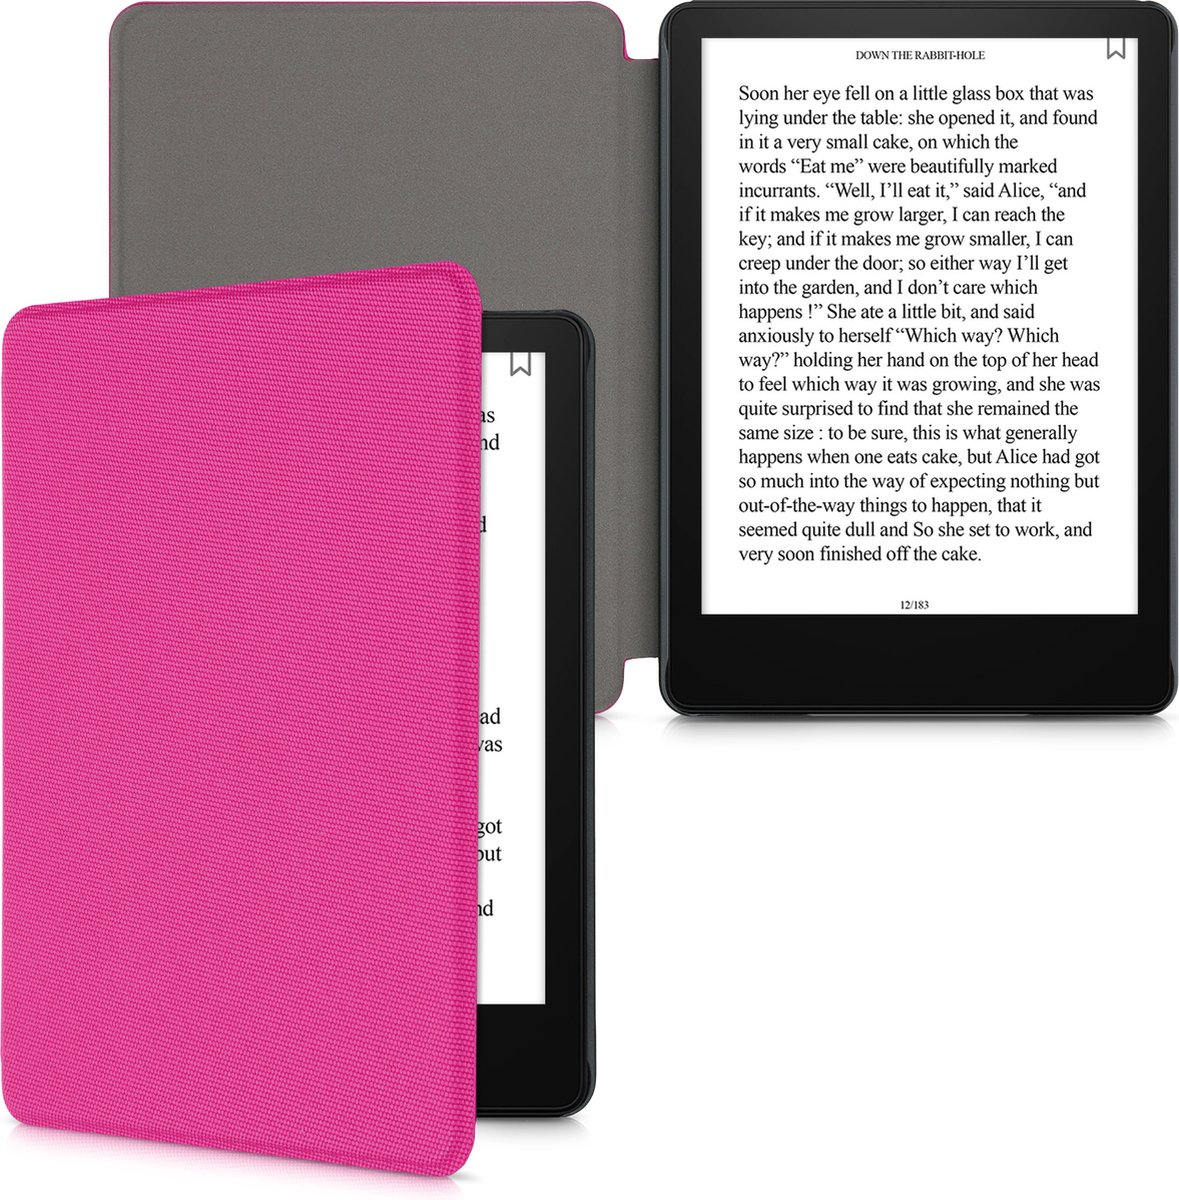 Étui en tissu pour  Kindle Paperwhite | Compatible avec les appareils  11e génération (modèle 2021) | Denim